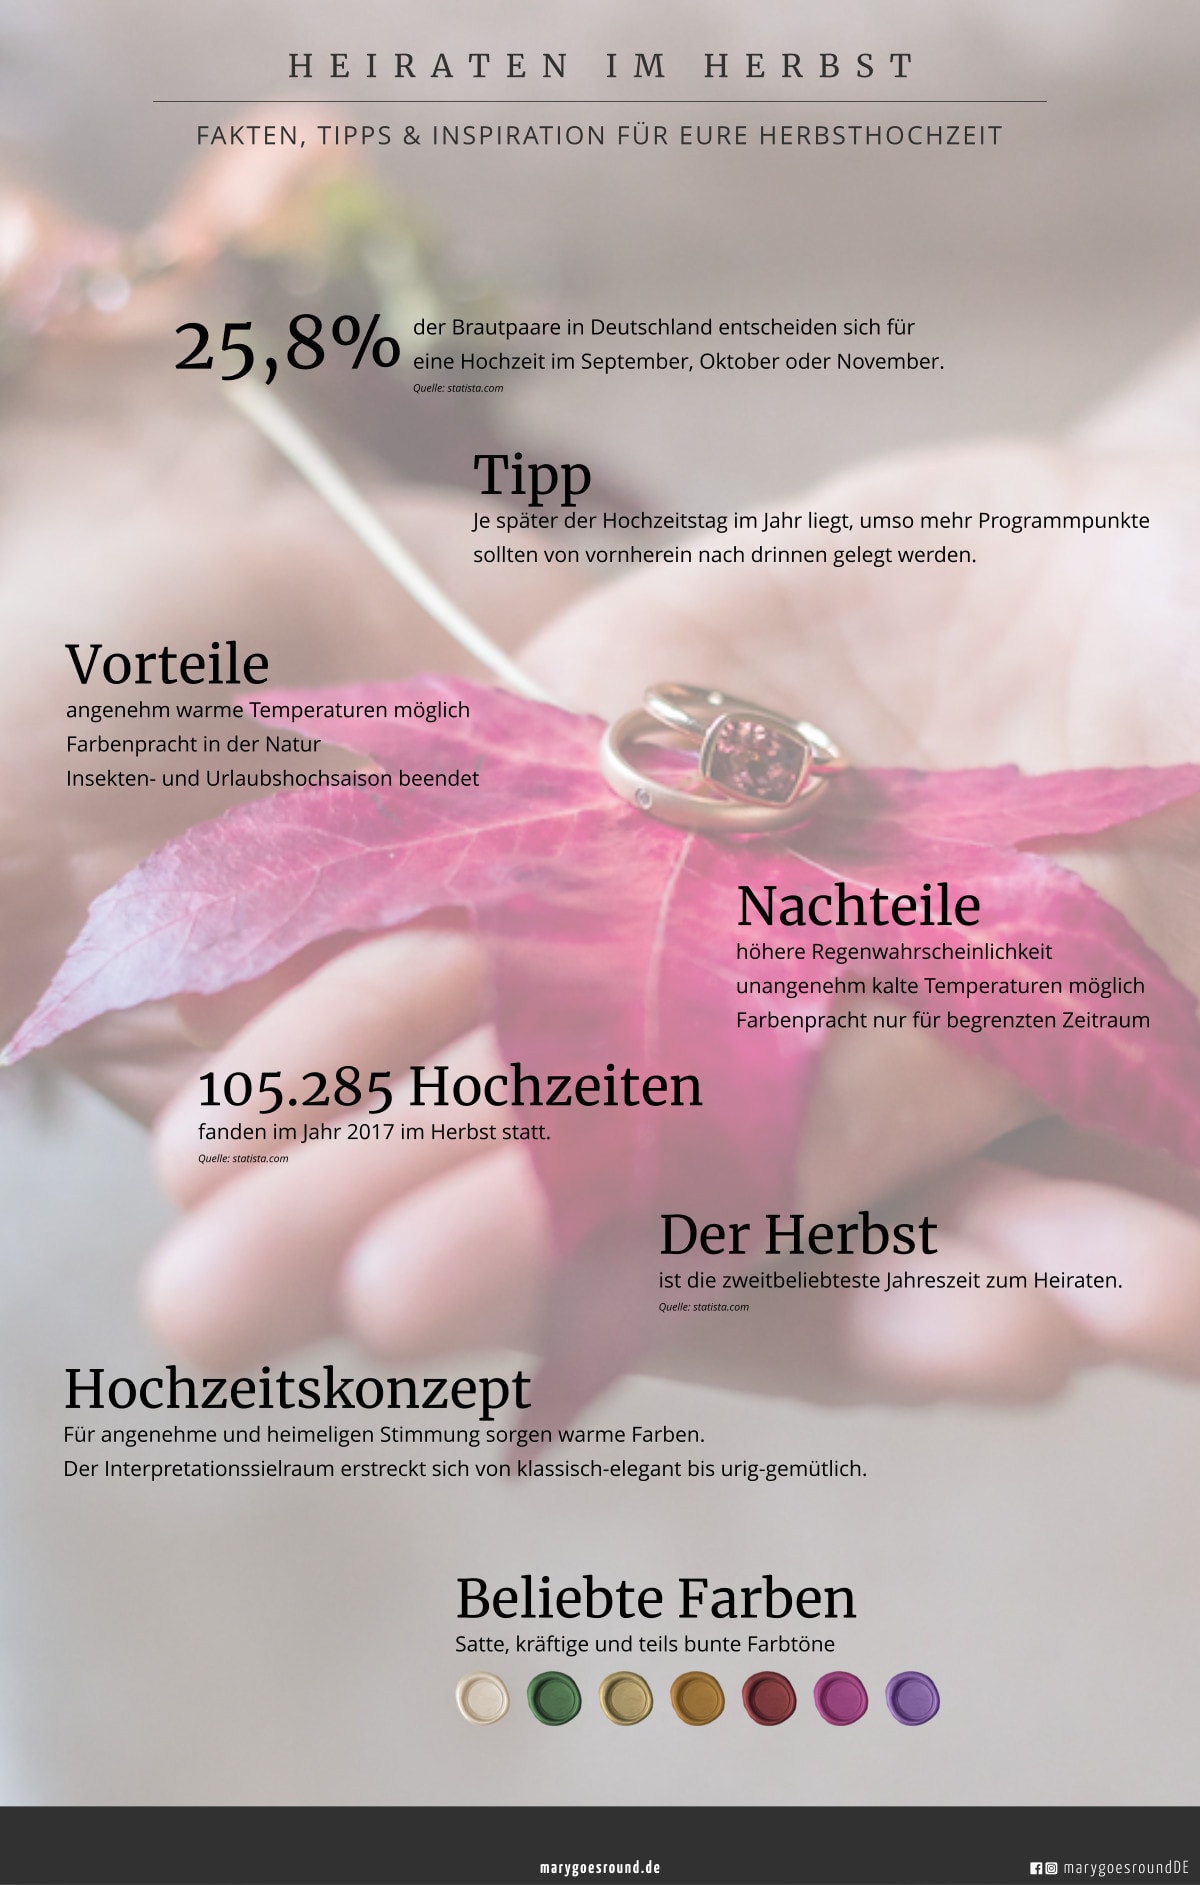 Blogserie "Hochzeit 4 Stagioni": Heiraten im Herbst, Infografik | marygoesround®